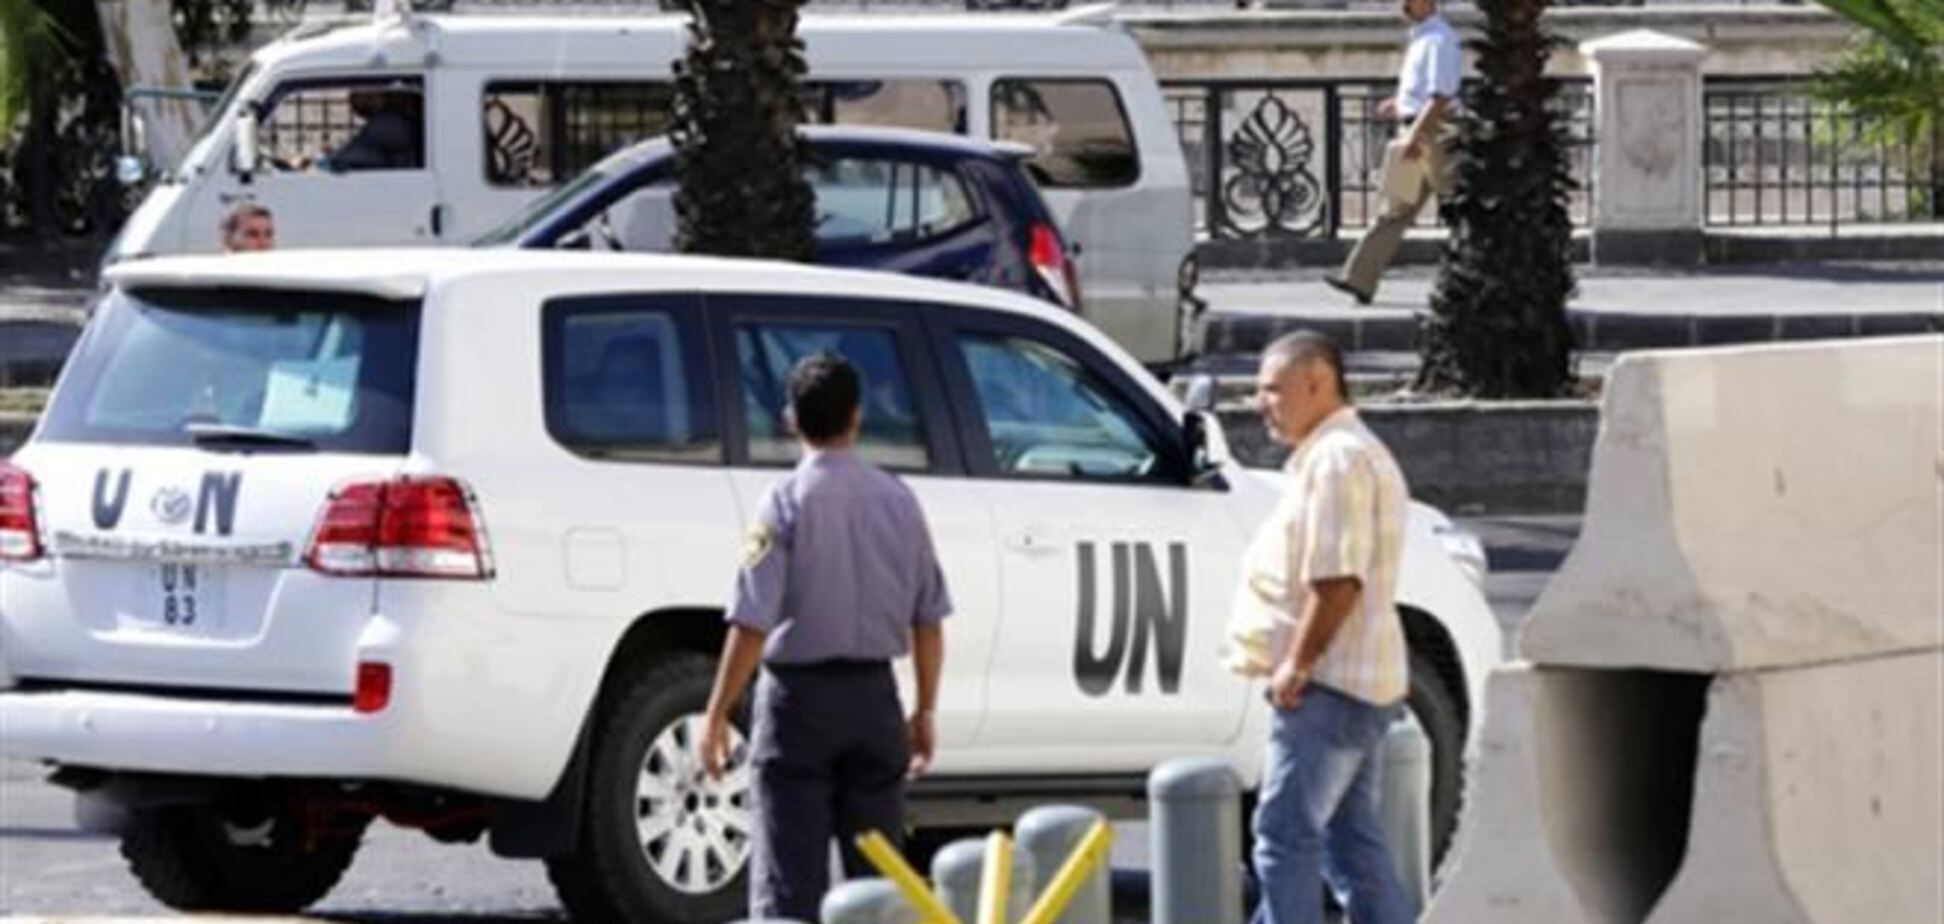 Италия в понедельник отправит в Сирию экспертов по химоружию